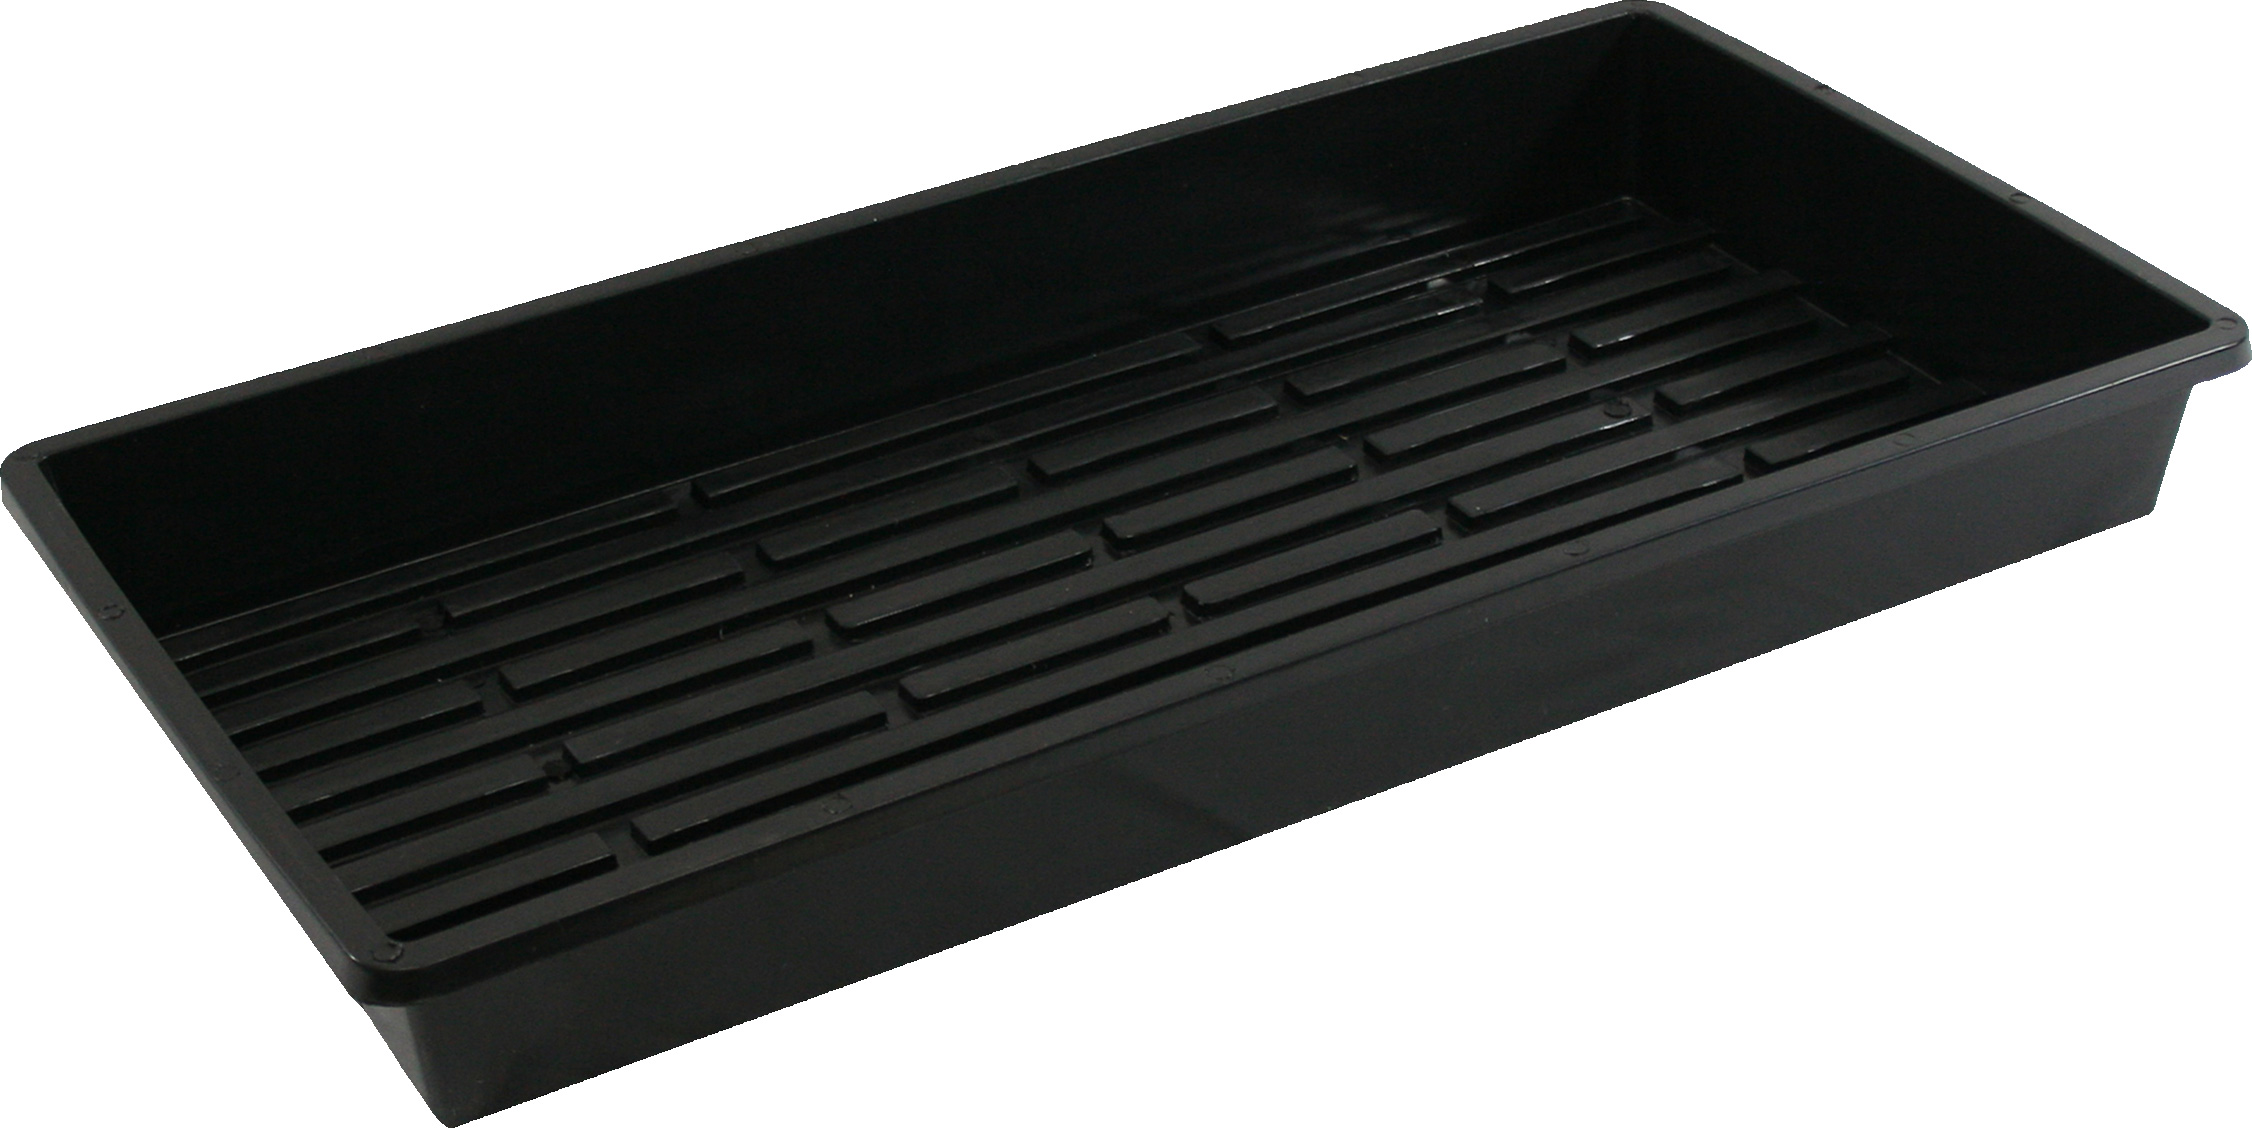 SunBlaster 1020 Quad Thick Tray [Minimum Order Quantity 5] SL1400235